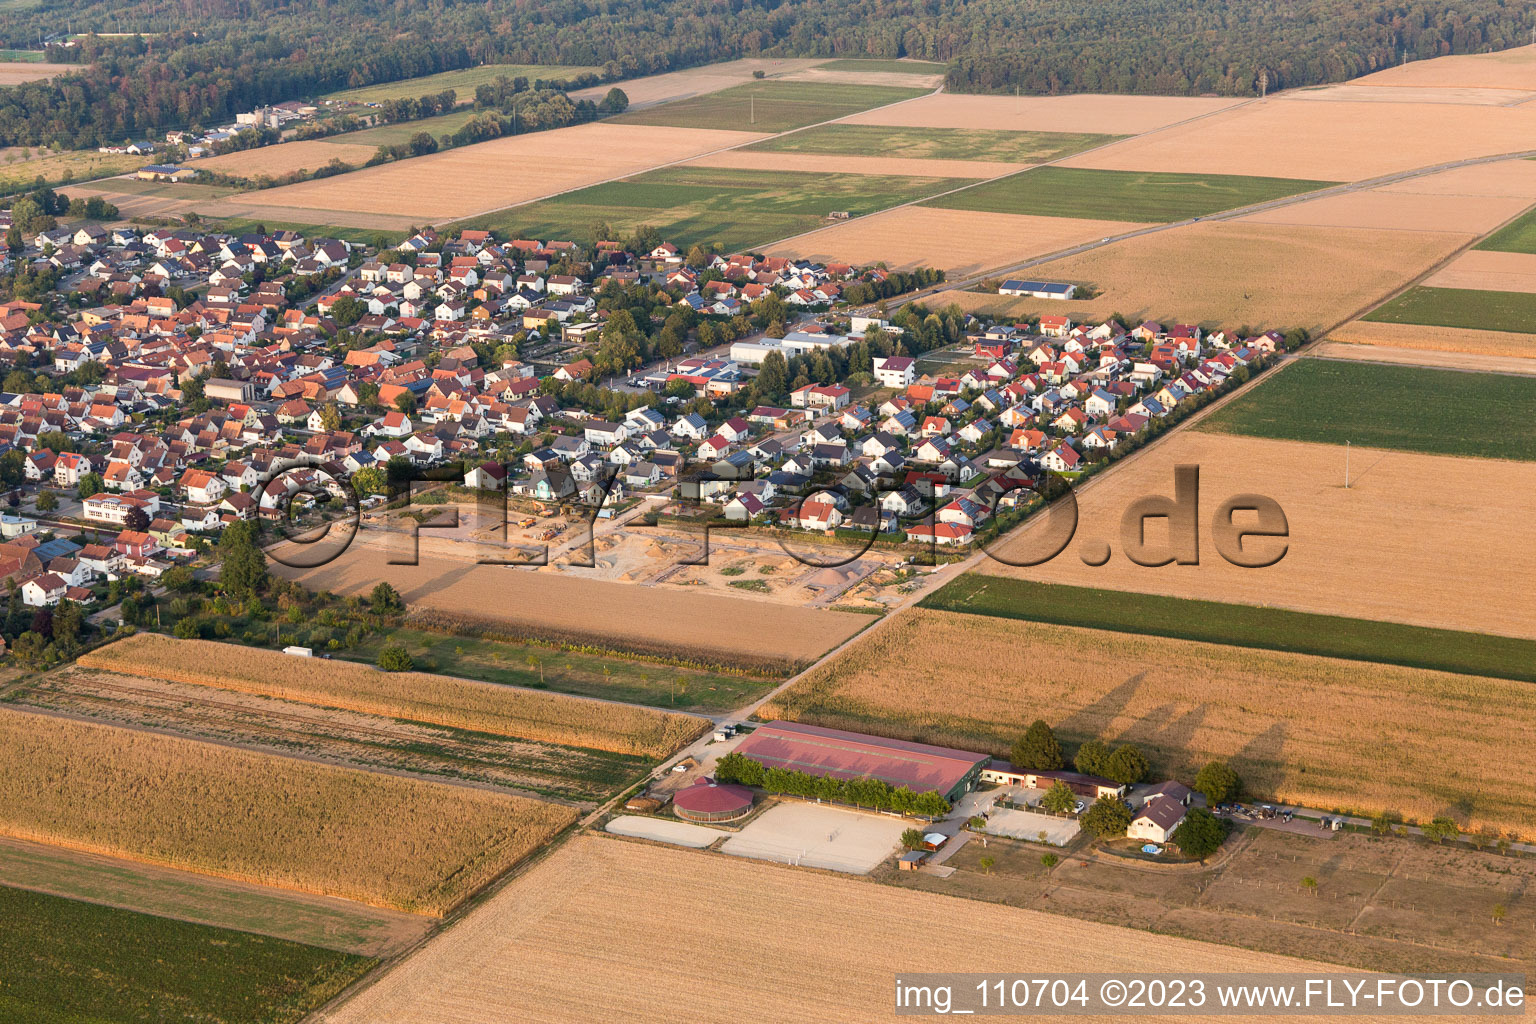 Vue aérienne de Agrandissement de la nouvelle zone de développement Brotäcker à Steinweiler dans le département Rhénanie-Palatinat, Allemagne